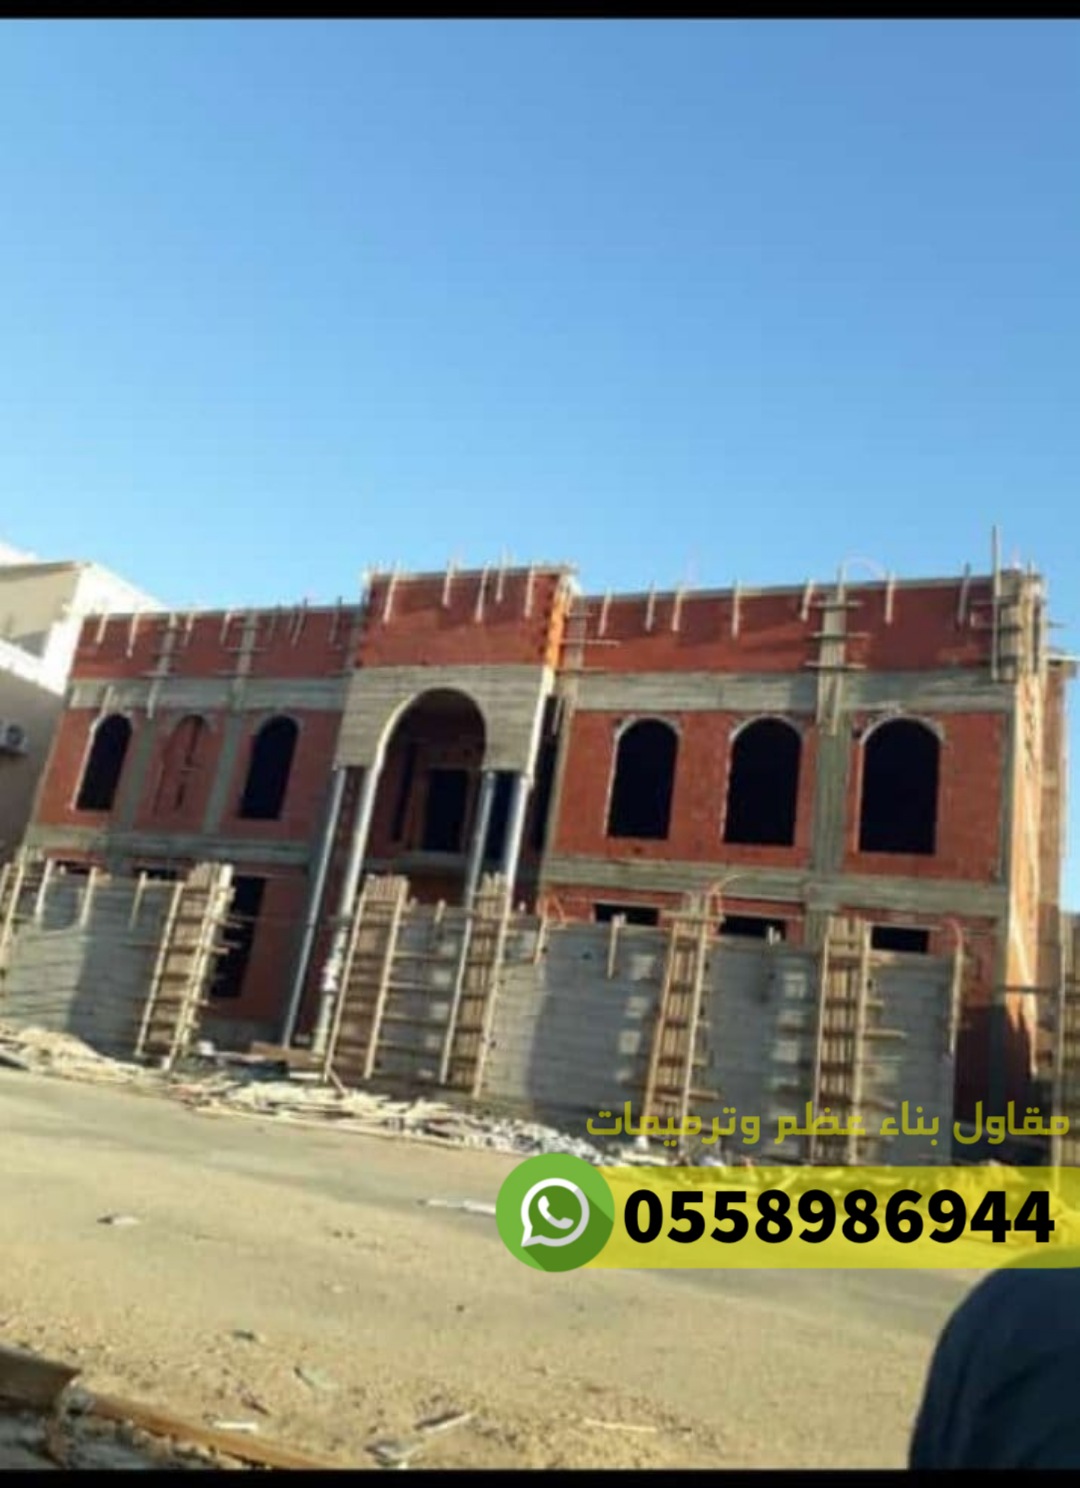 مقاول معماري في جدة, 0558986944